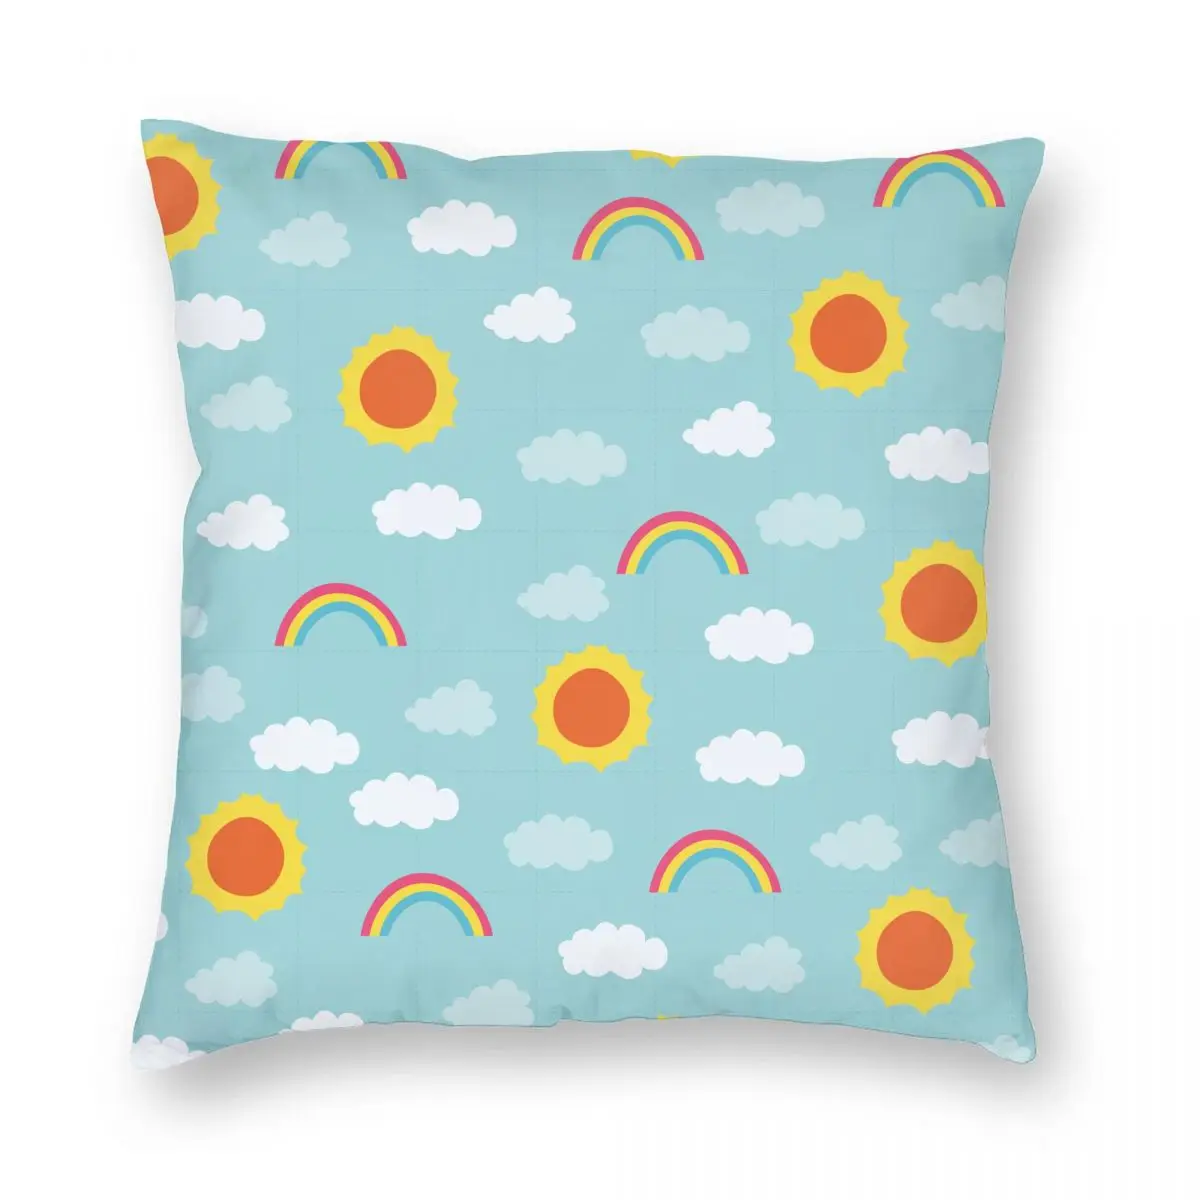 

Stars Astronaut Cute Sun Cloud Pillowcase Printed Fabric Cushion Cover Gift Pillow Case Cover Car Square 40*40cm